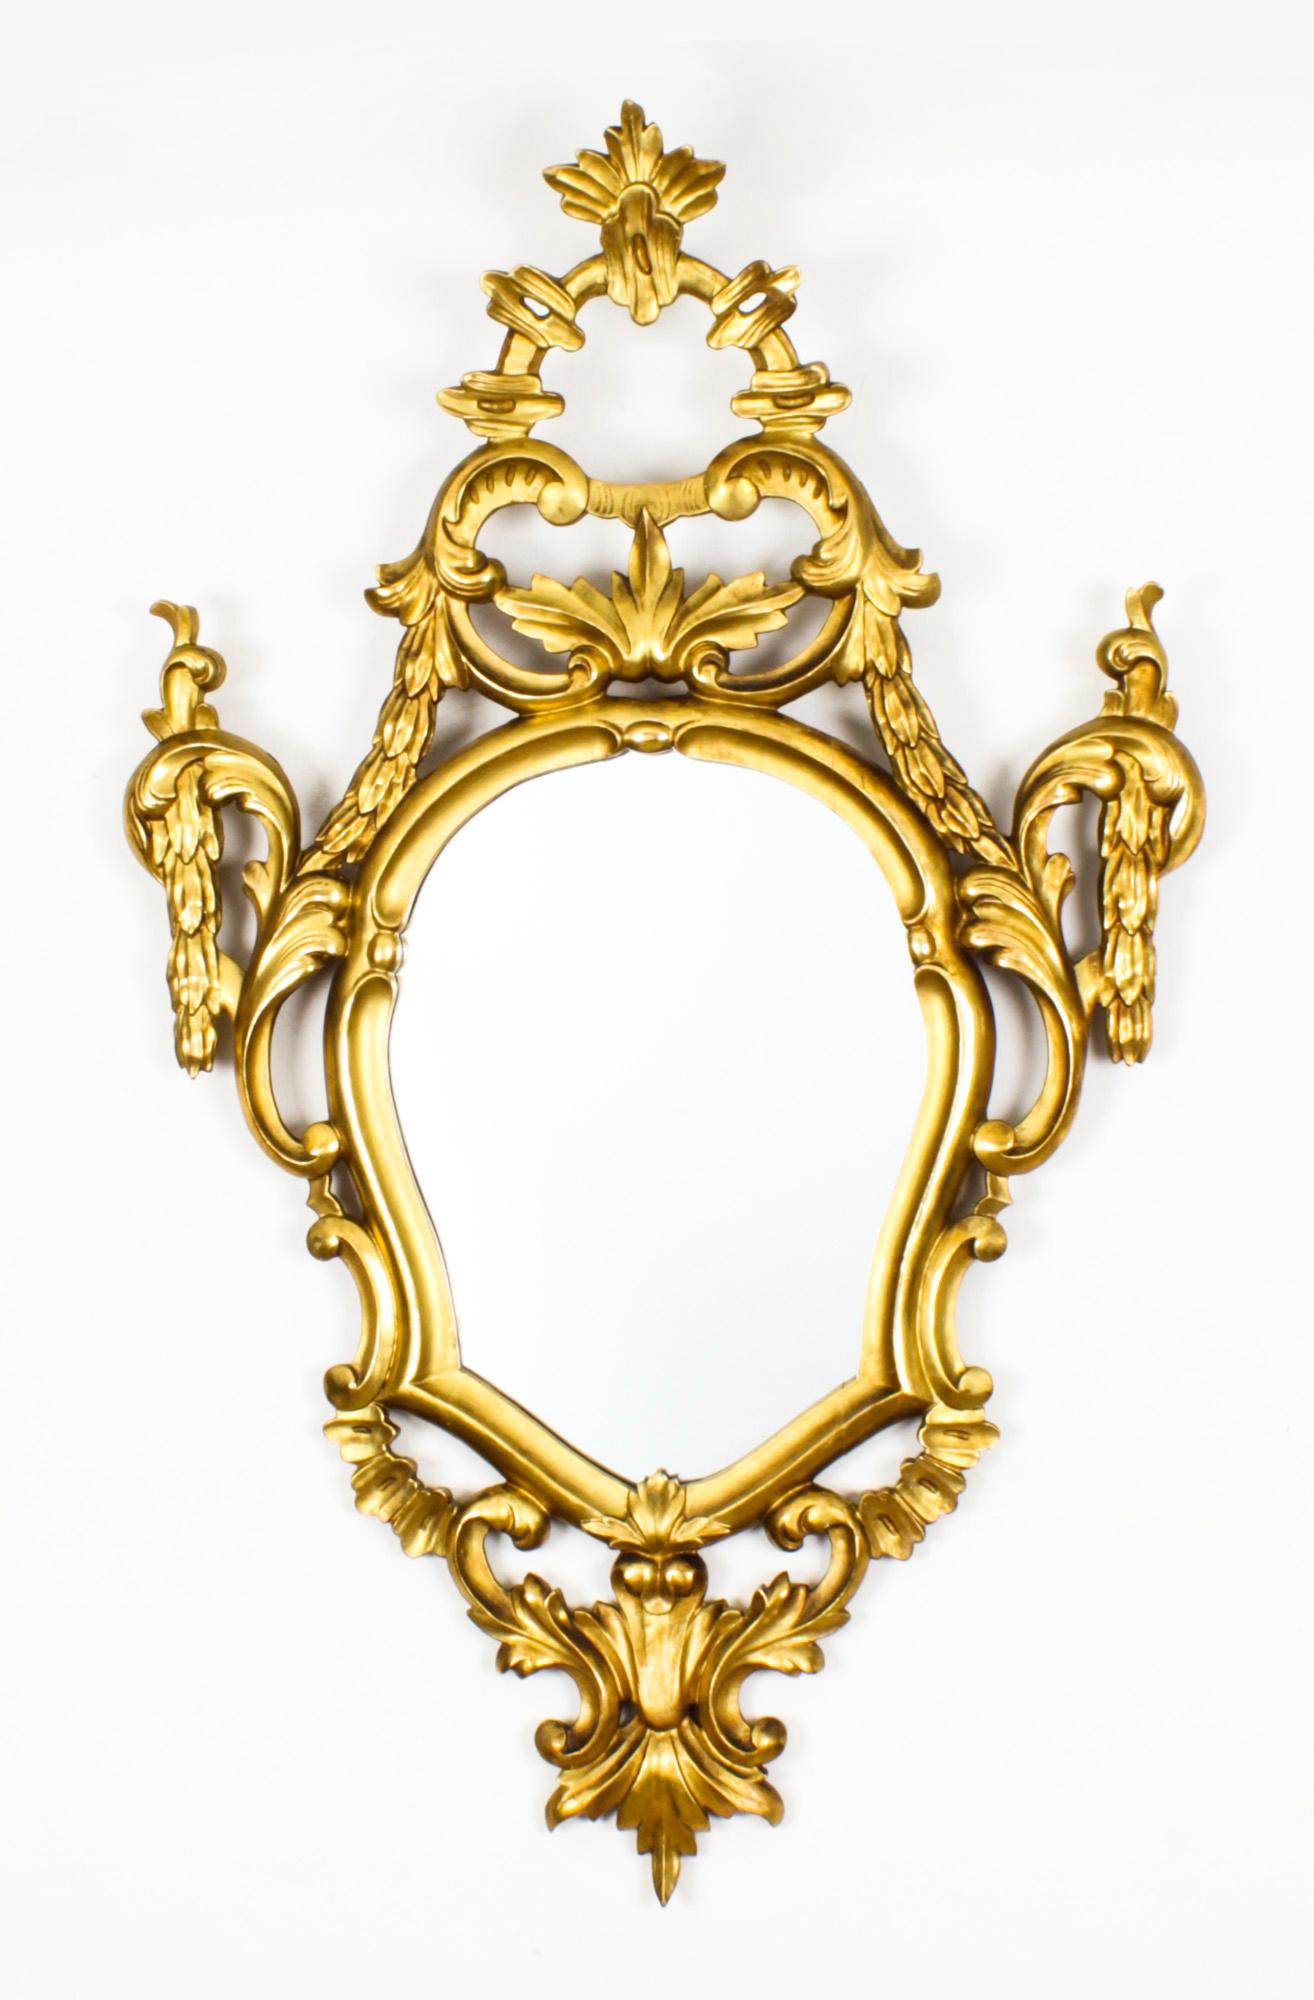 Il s'agit d'une superbe paire de miroirs italiens anciens en bois doré florentin, datant d'environ 1870.
 
Les plaques de miroirs ovales sont placées dans un cadre Rococo à acanthes sculptées en gras, et elles conservent la dorure d'origine.
